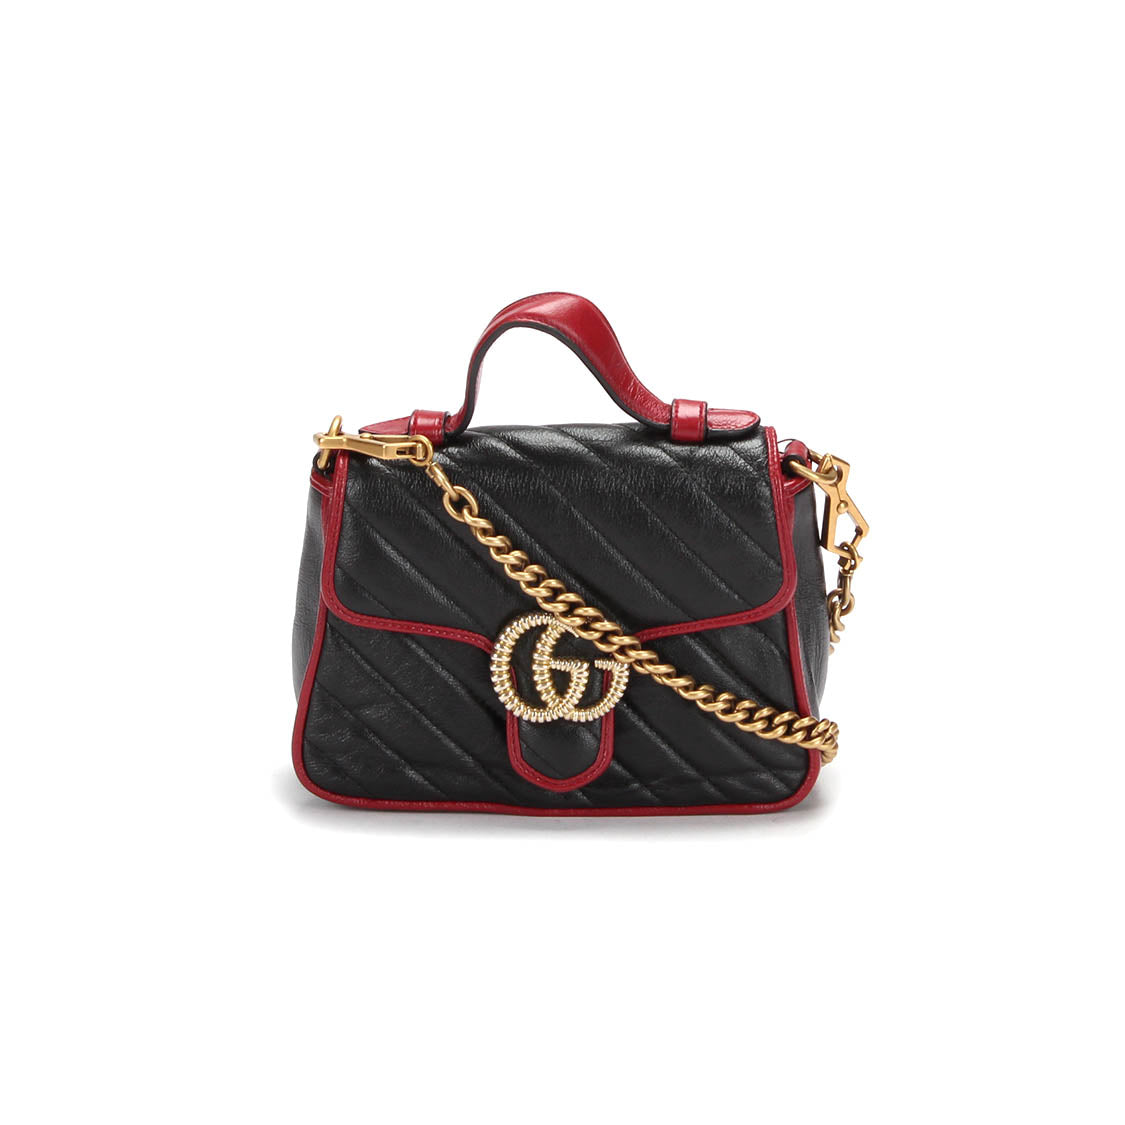 GG Marmont Mini Top Handle Bag 583571